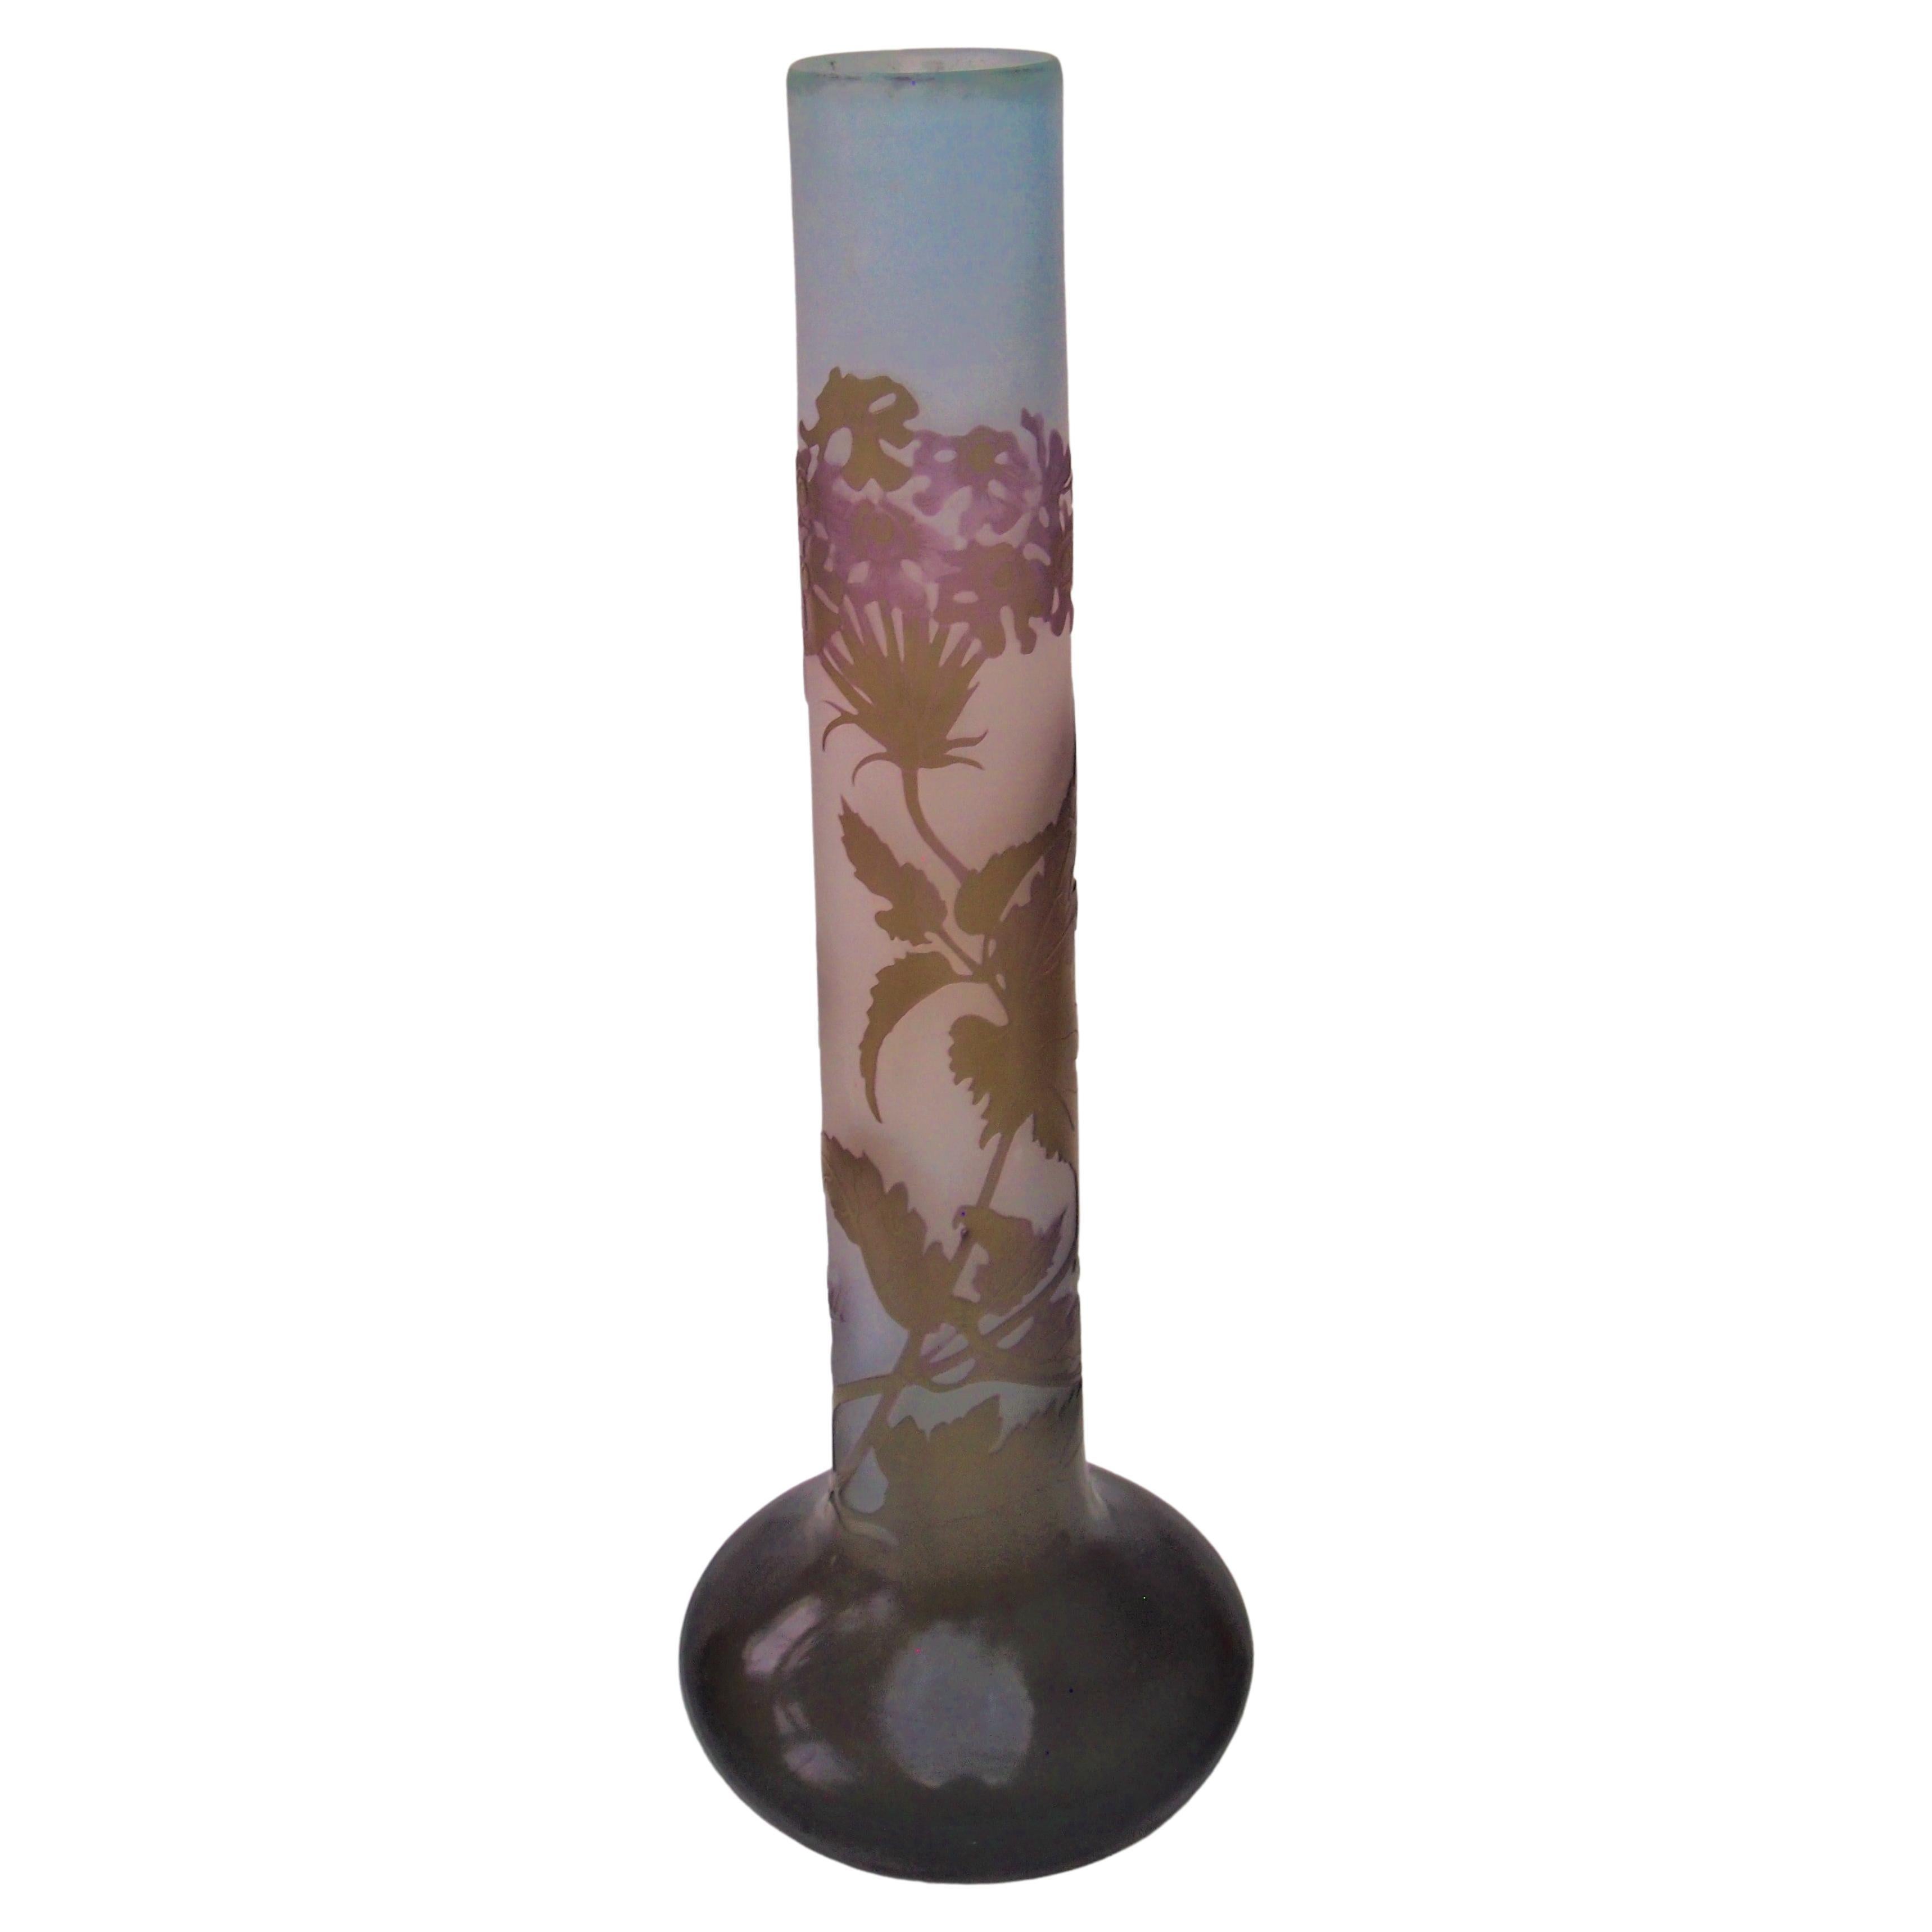 Vase en verre camée Vervain Blossom de style Art nouveau français d'Emile Galle, vers 1908